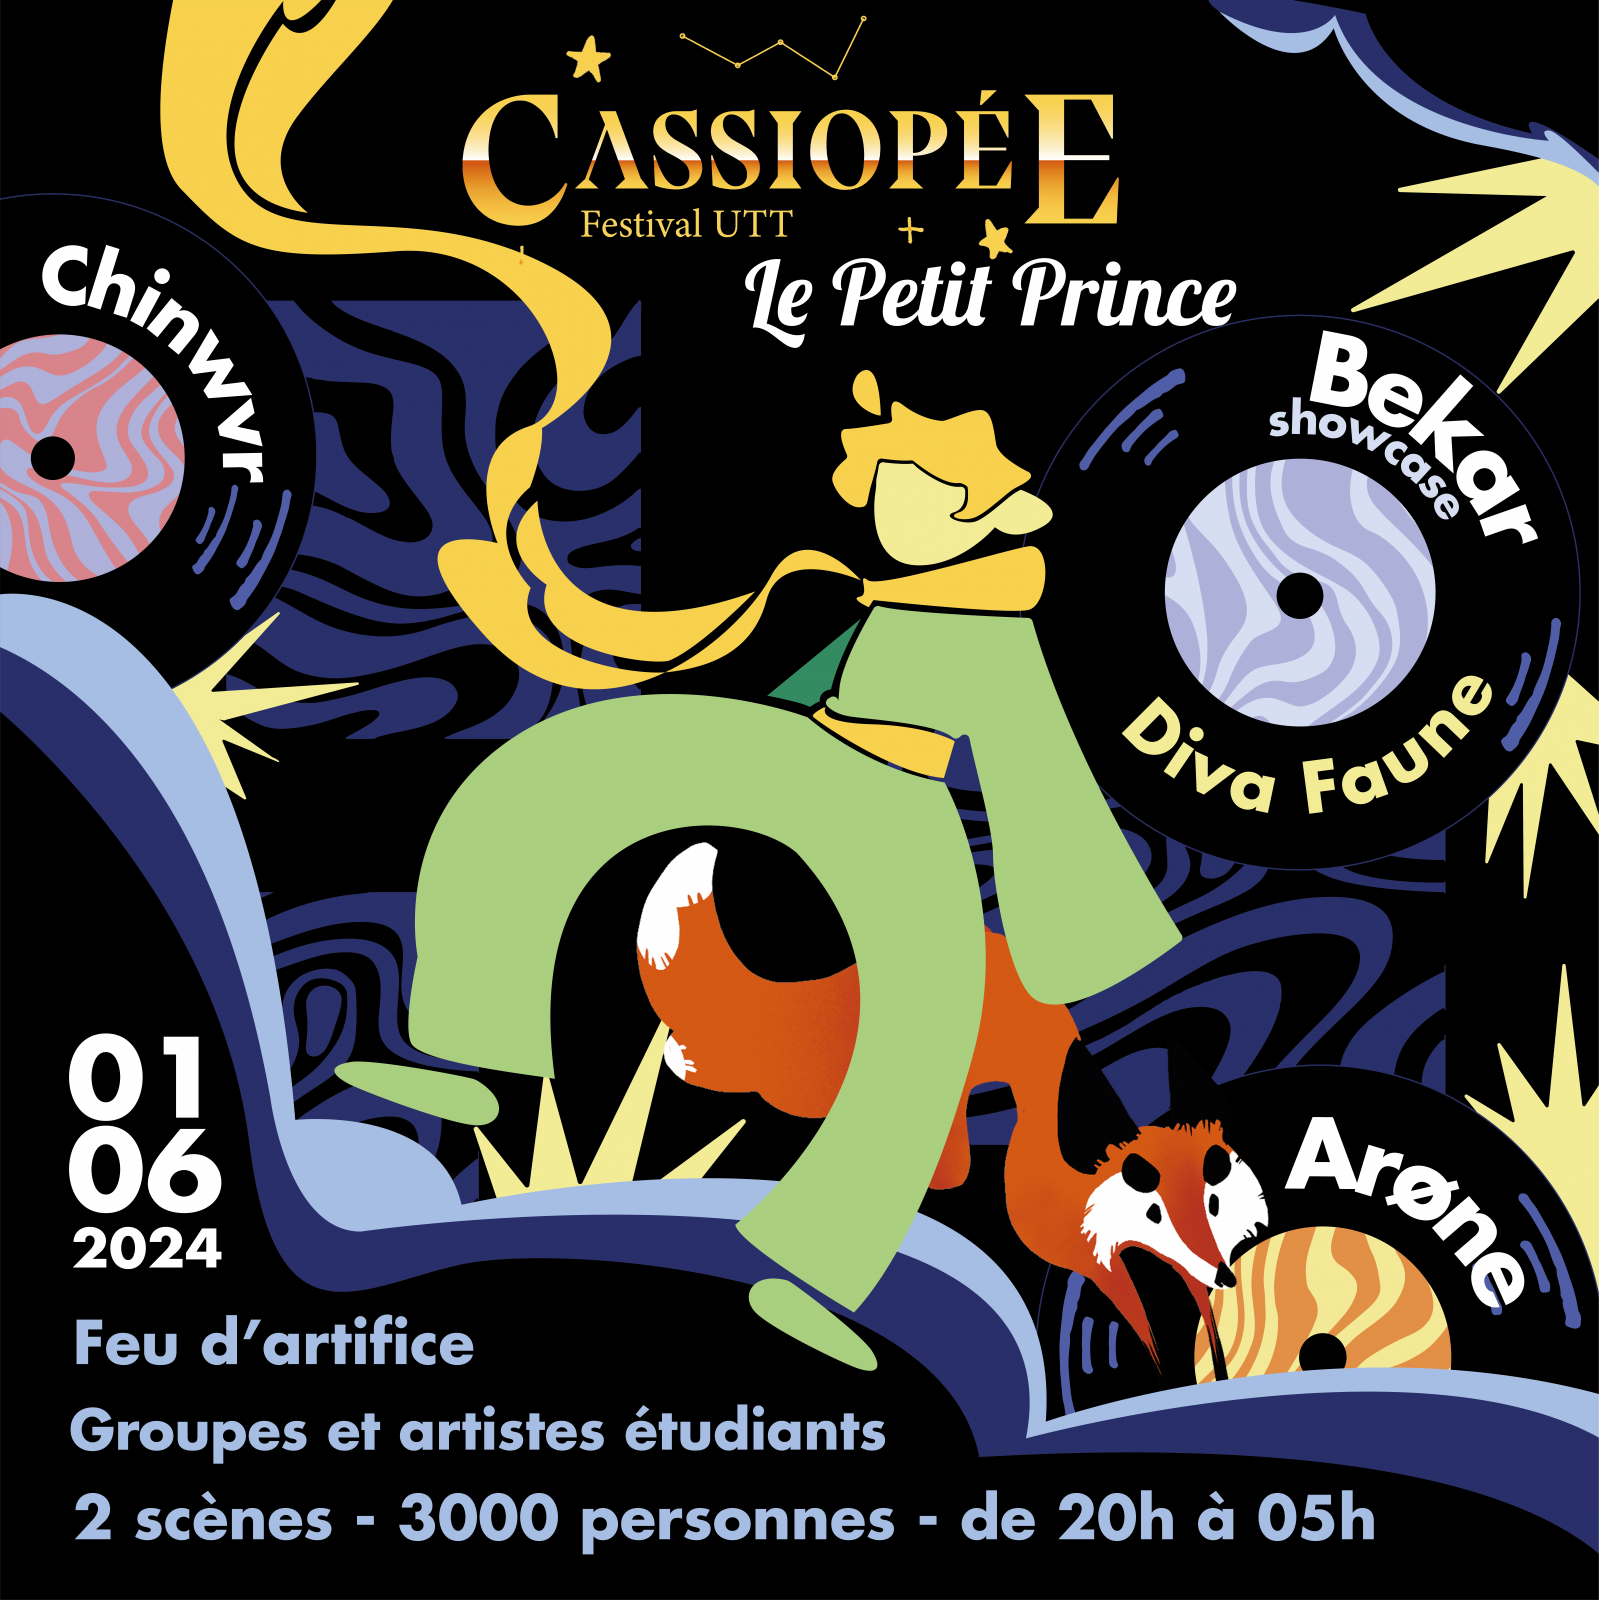 CASSIOPÉE - FESTIVAL UTT Du 1 au 2 juin 2024